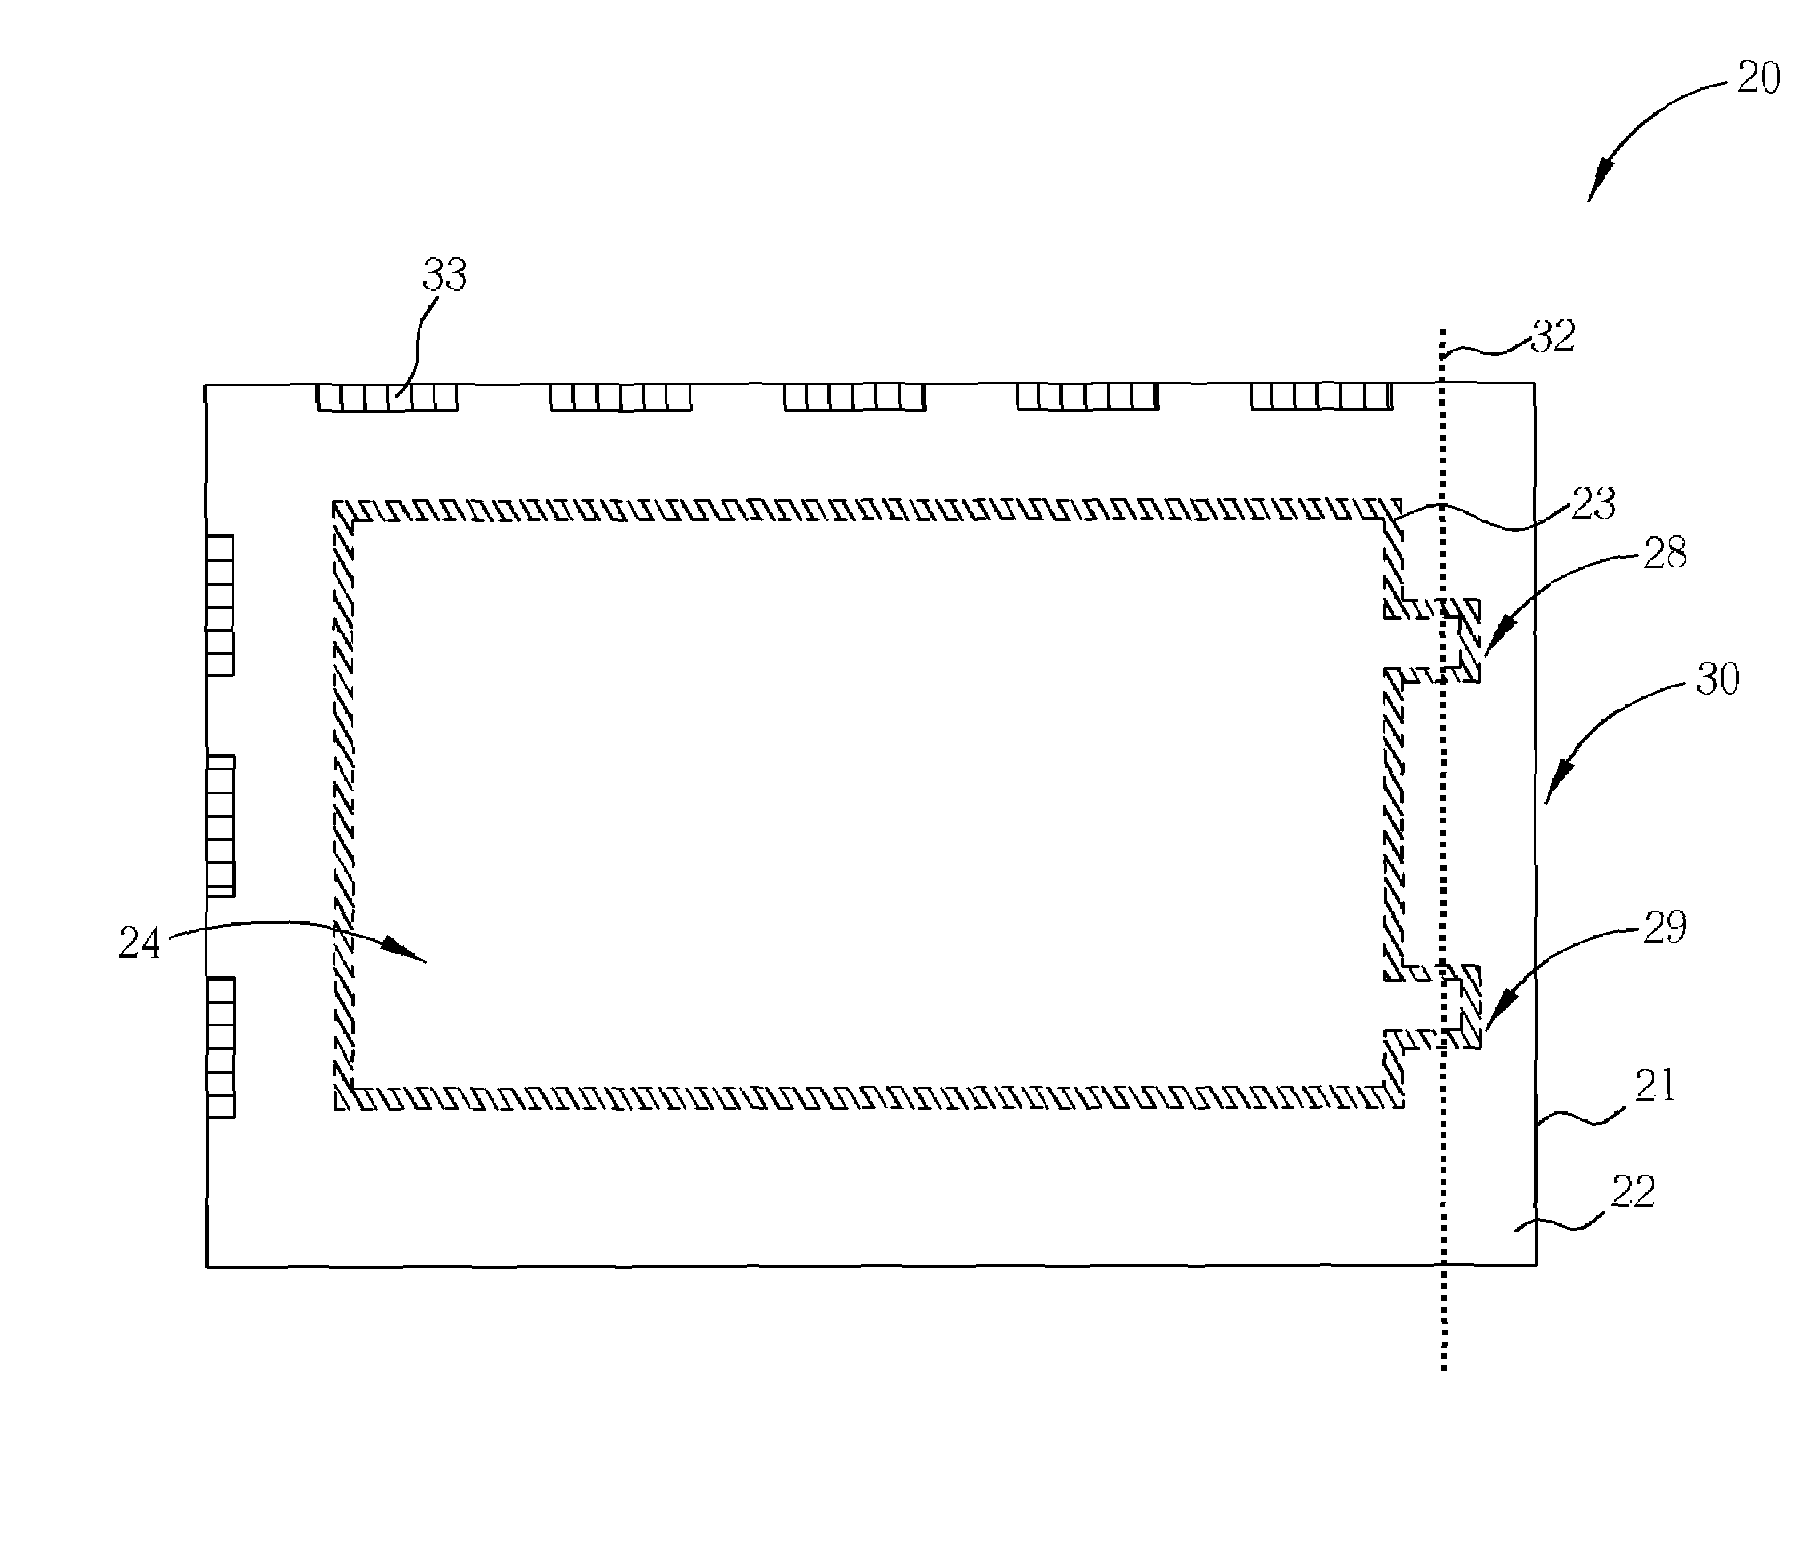 Method of repairing a liquid crystal display panel